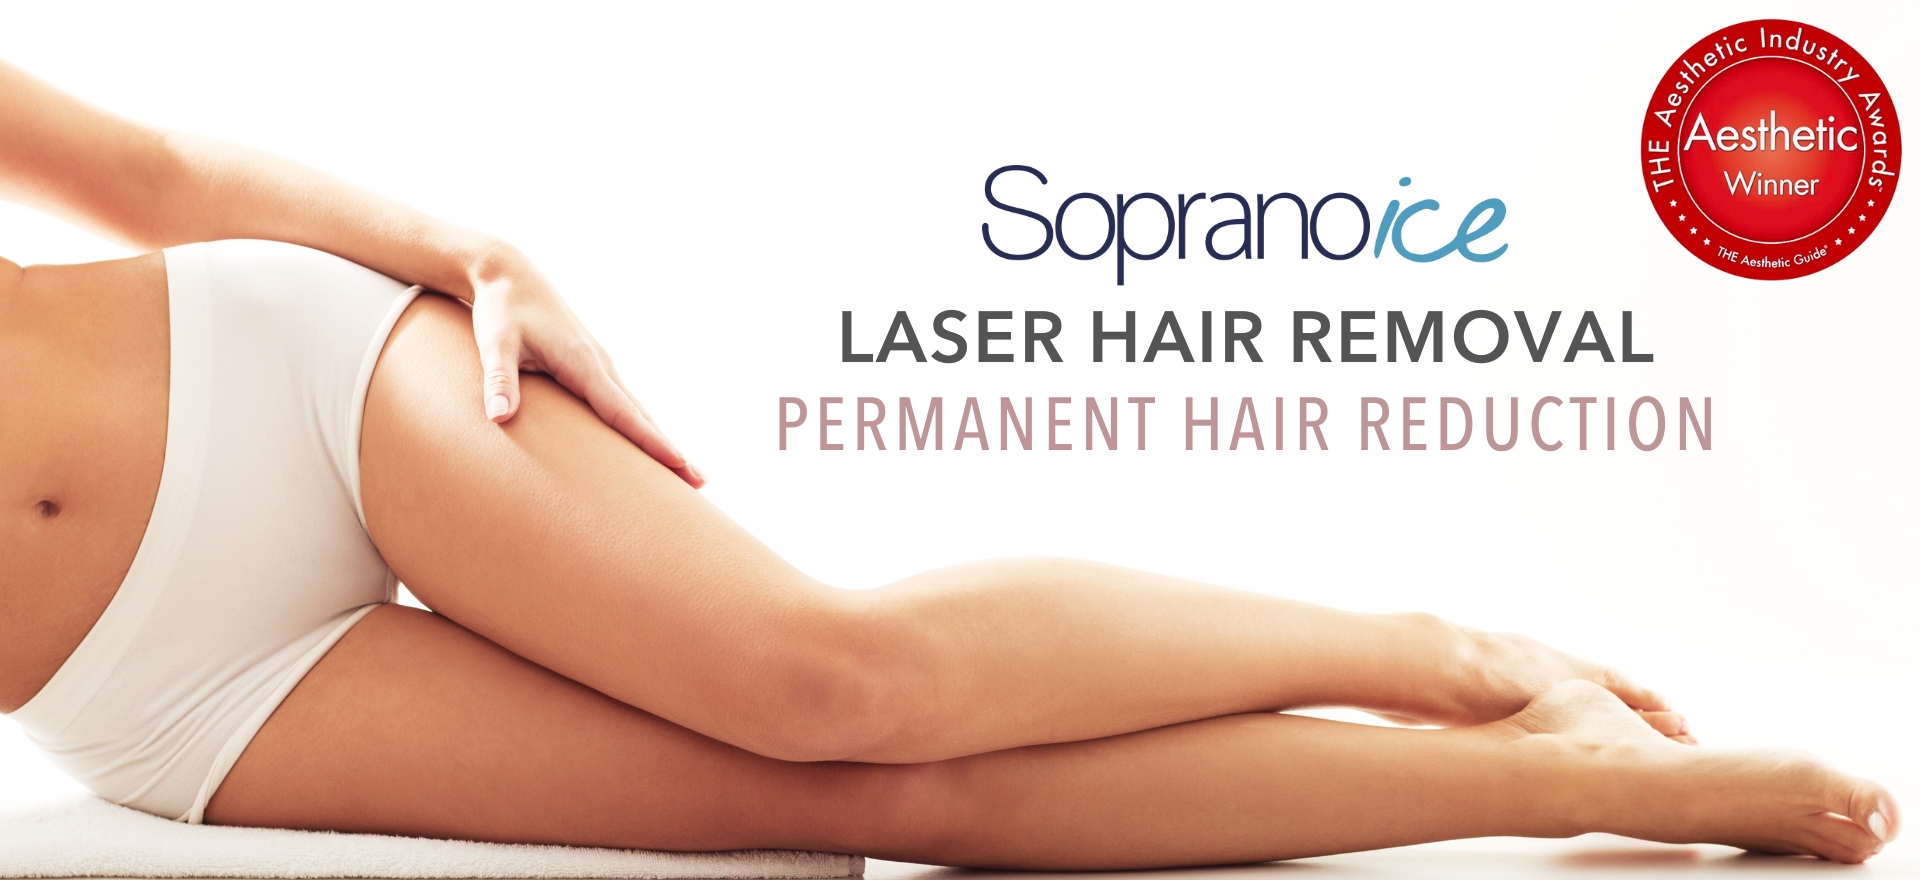 soprano-ice-laser-hair-removal-totowa-nj-maya-med-spa-desktop